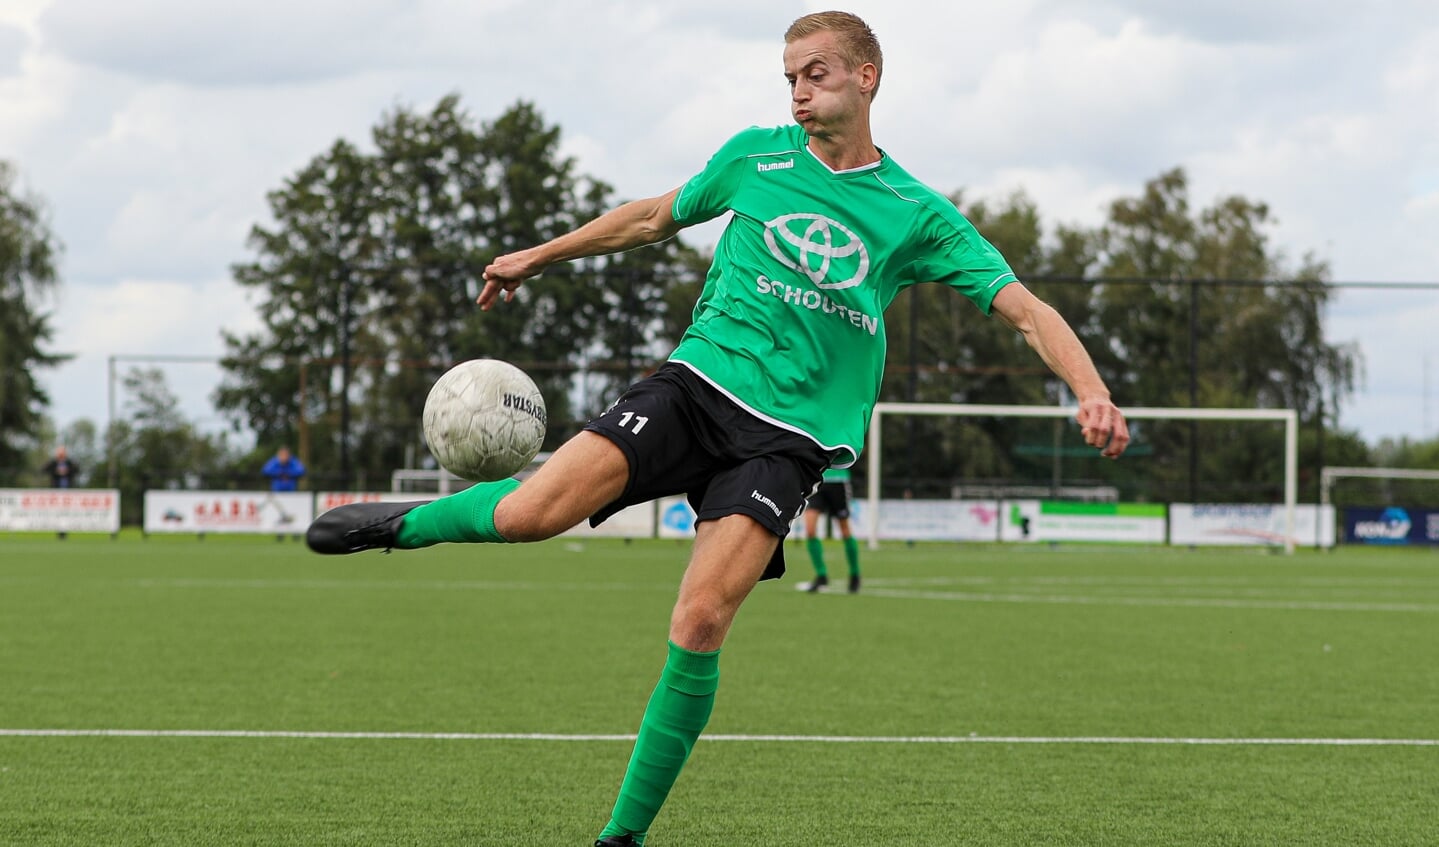 • SV Noordeloos - Groot-Ammers (2-2).